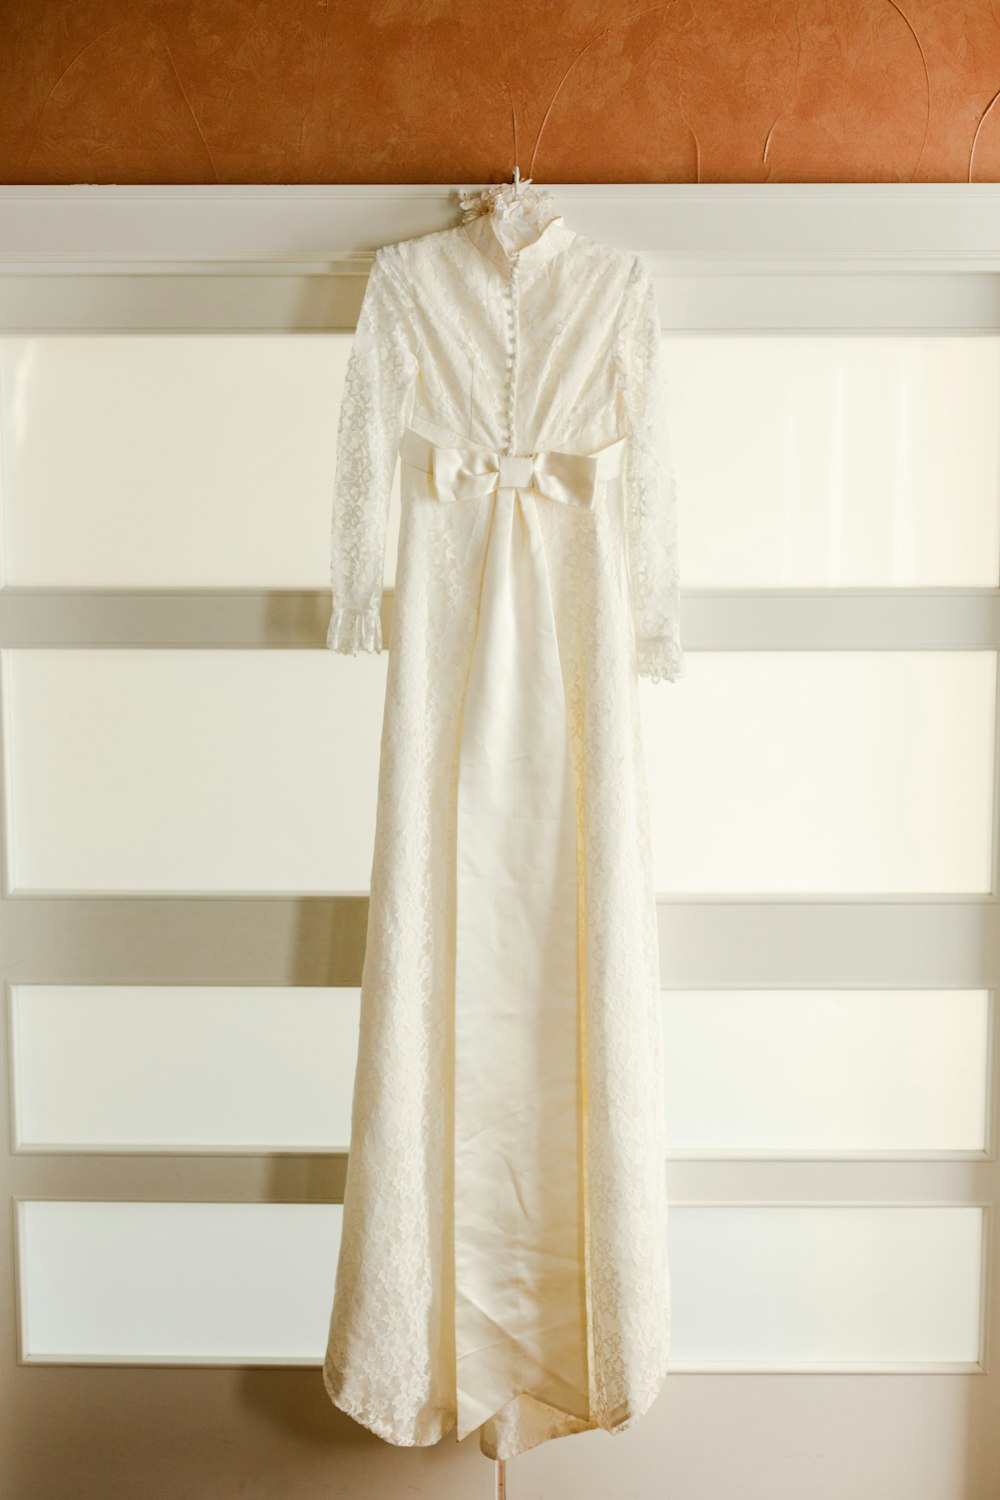 white long sleeve dress hanged on white wooden rack